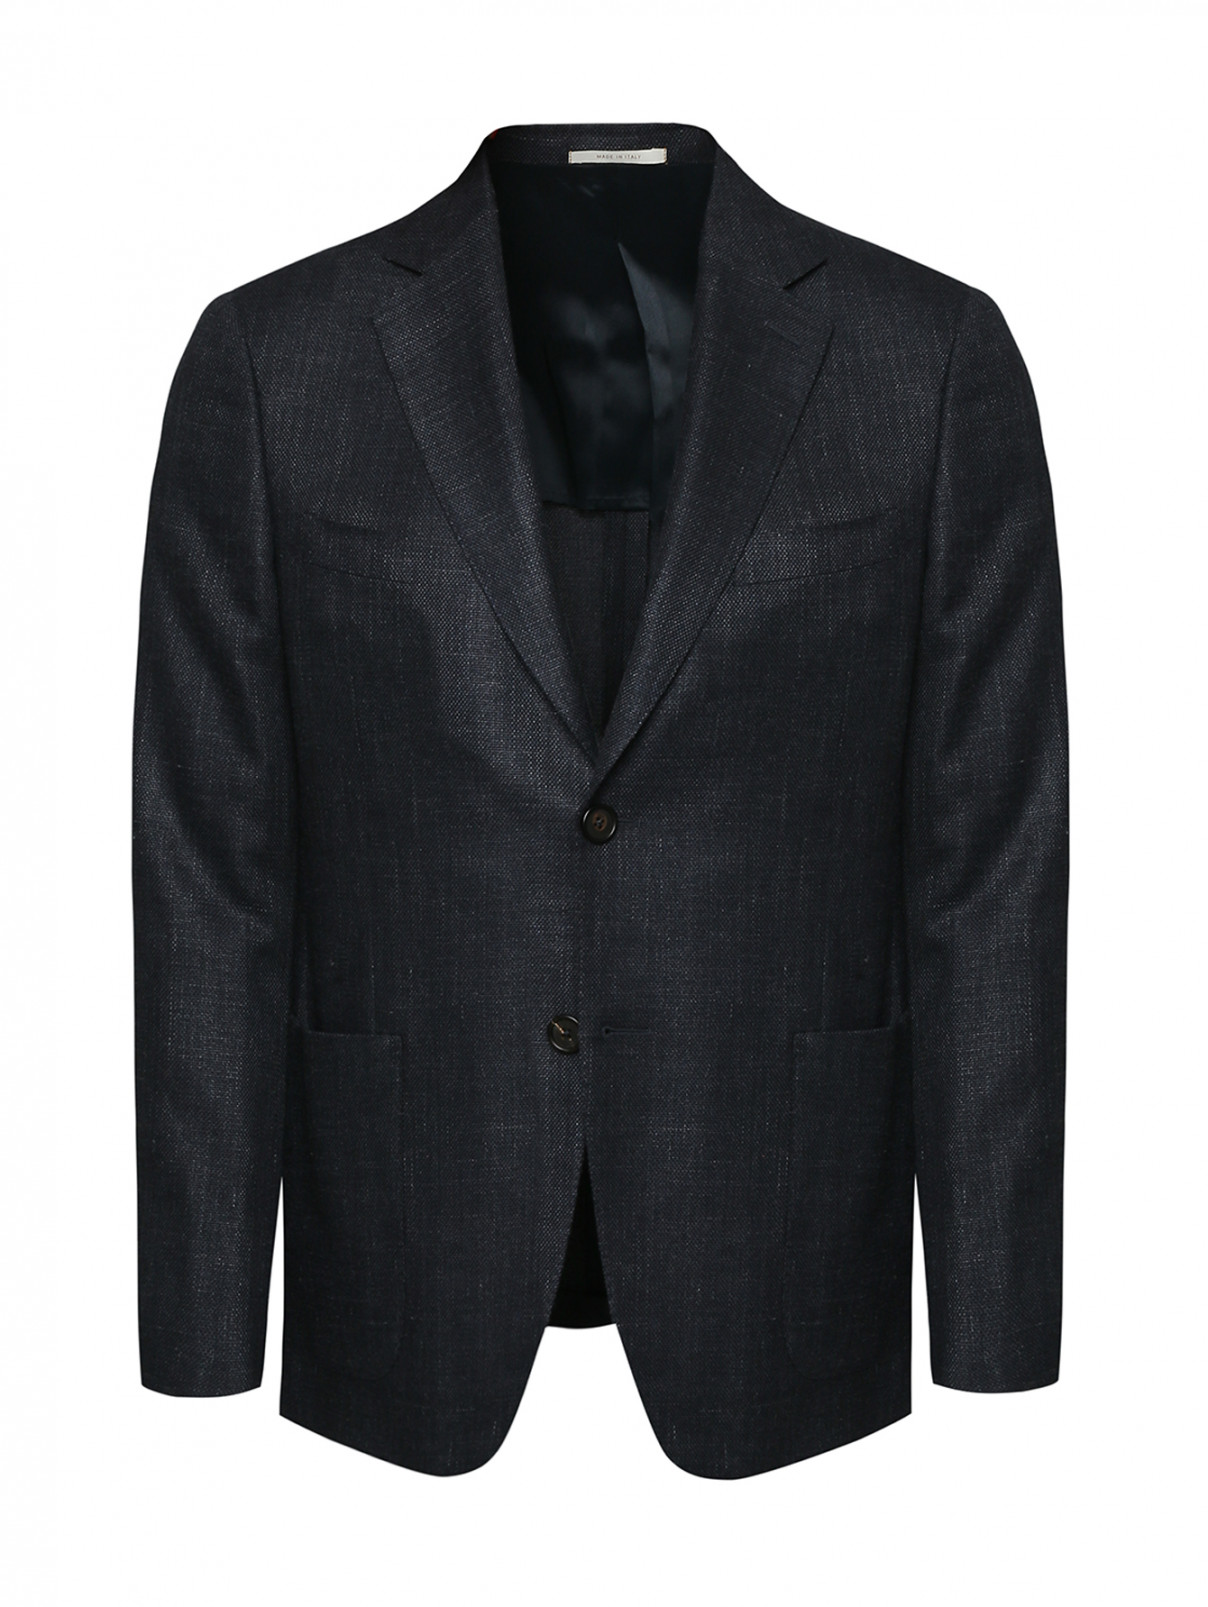 Пиджак из шерсти и шелка с накладными карманами Pal Zileri  –  Общий вид  – Цвет:  Синий